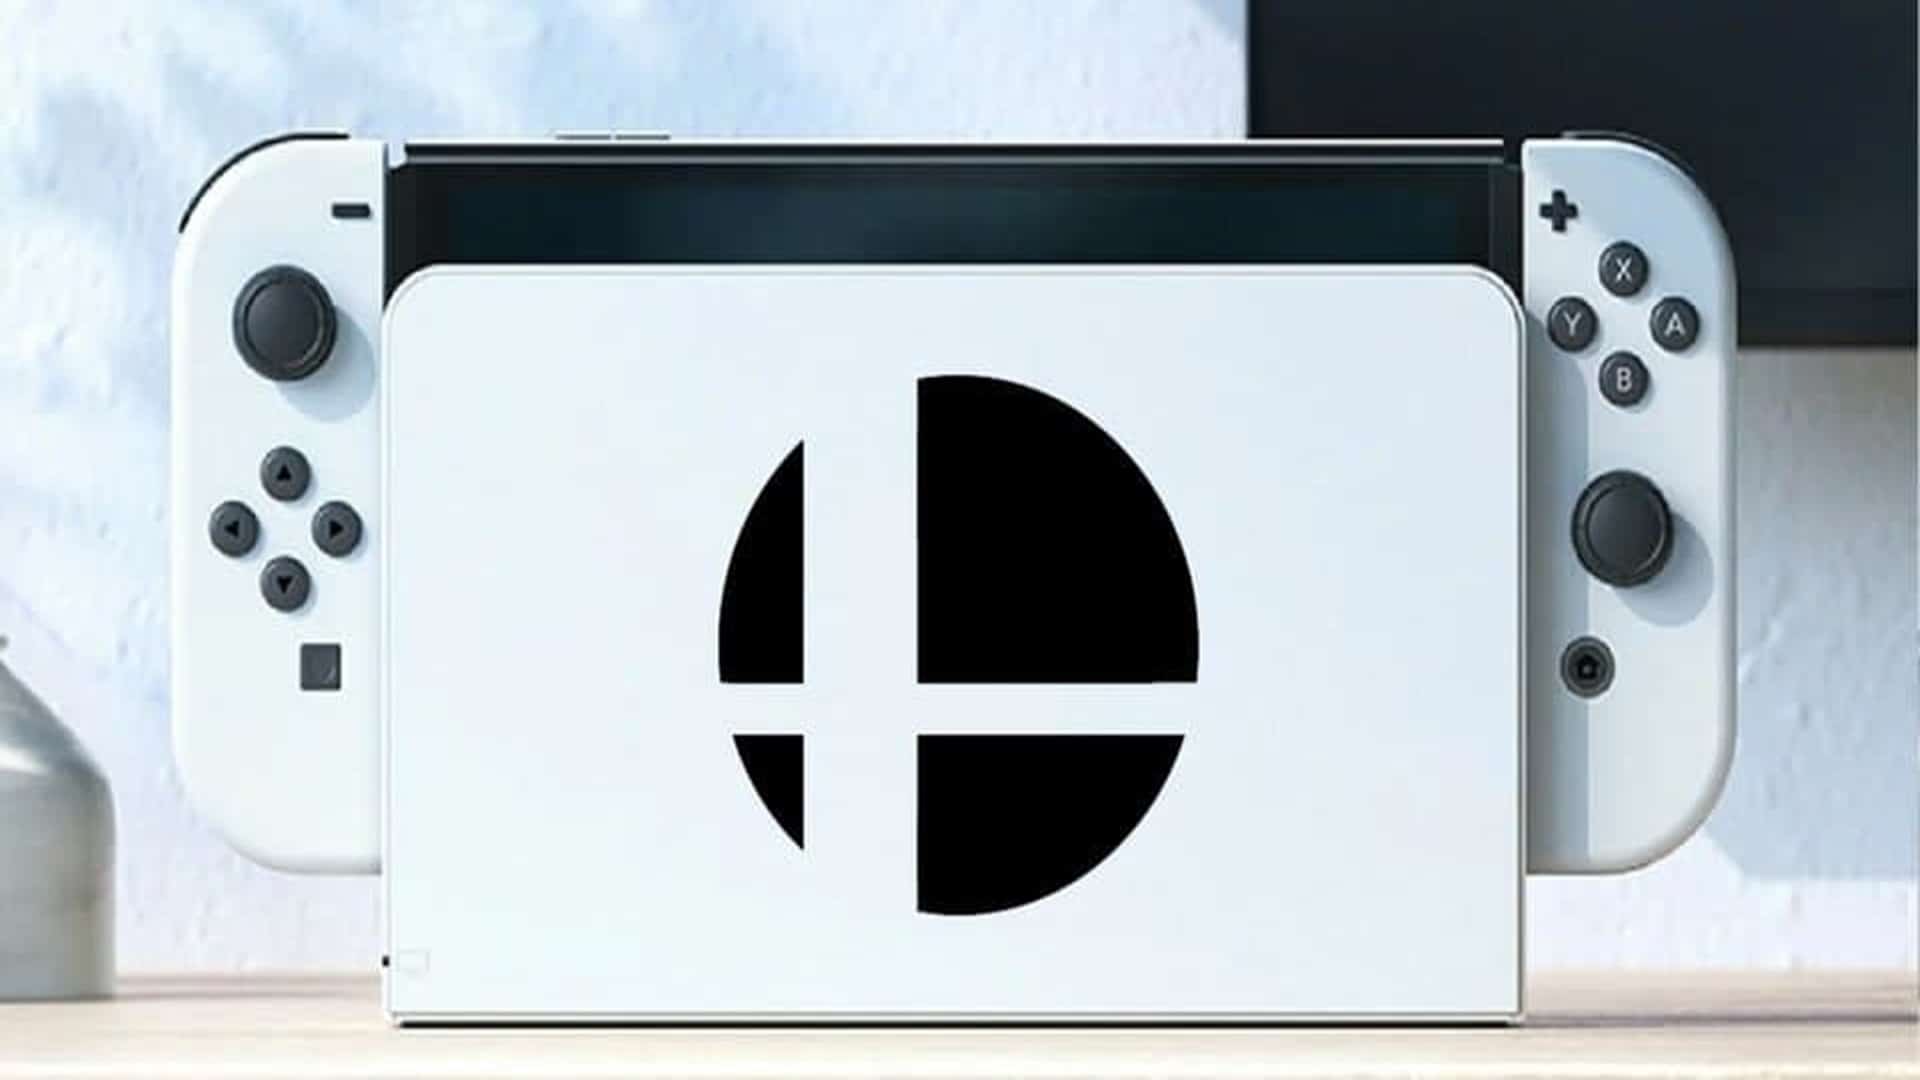 Fan de Super Smash Bros. muestra una carcasa metálica personalizada para Nintendo Switch, GamersRD